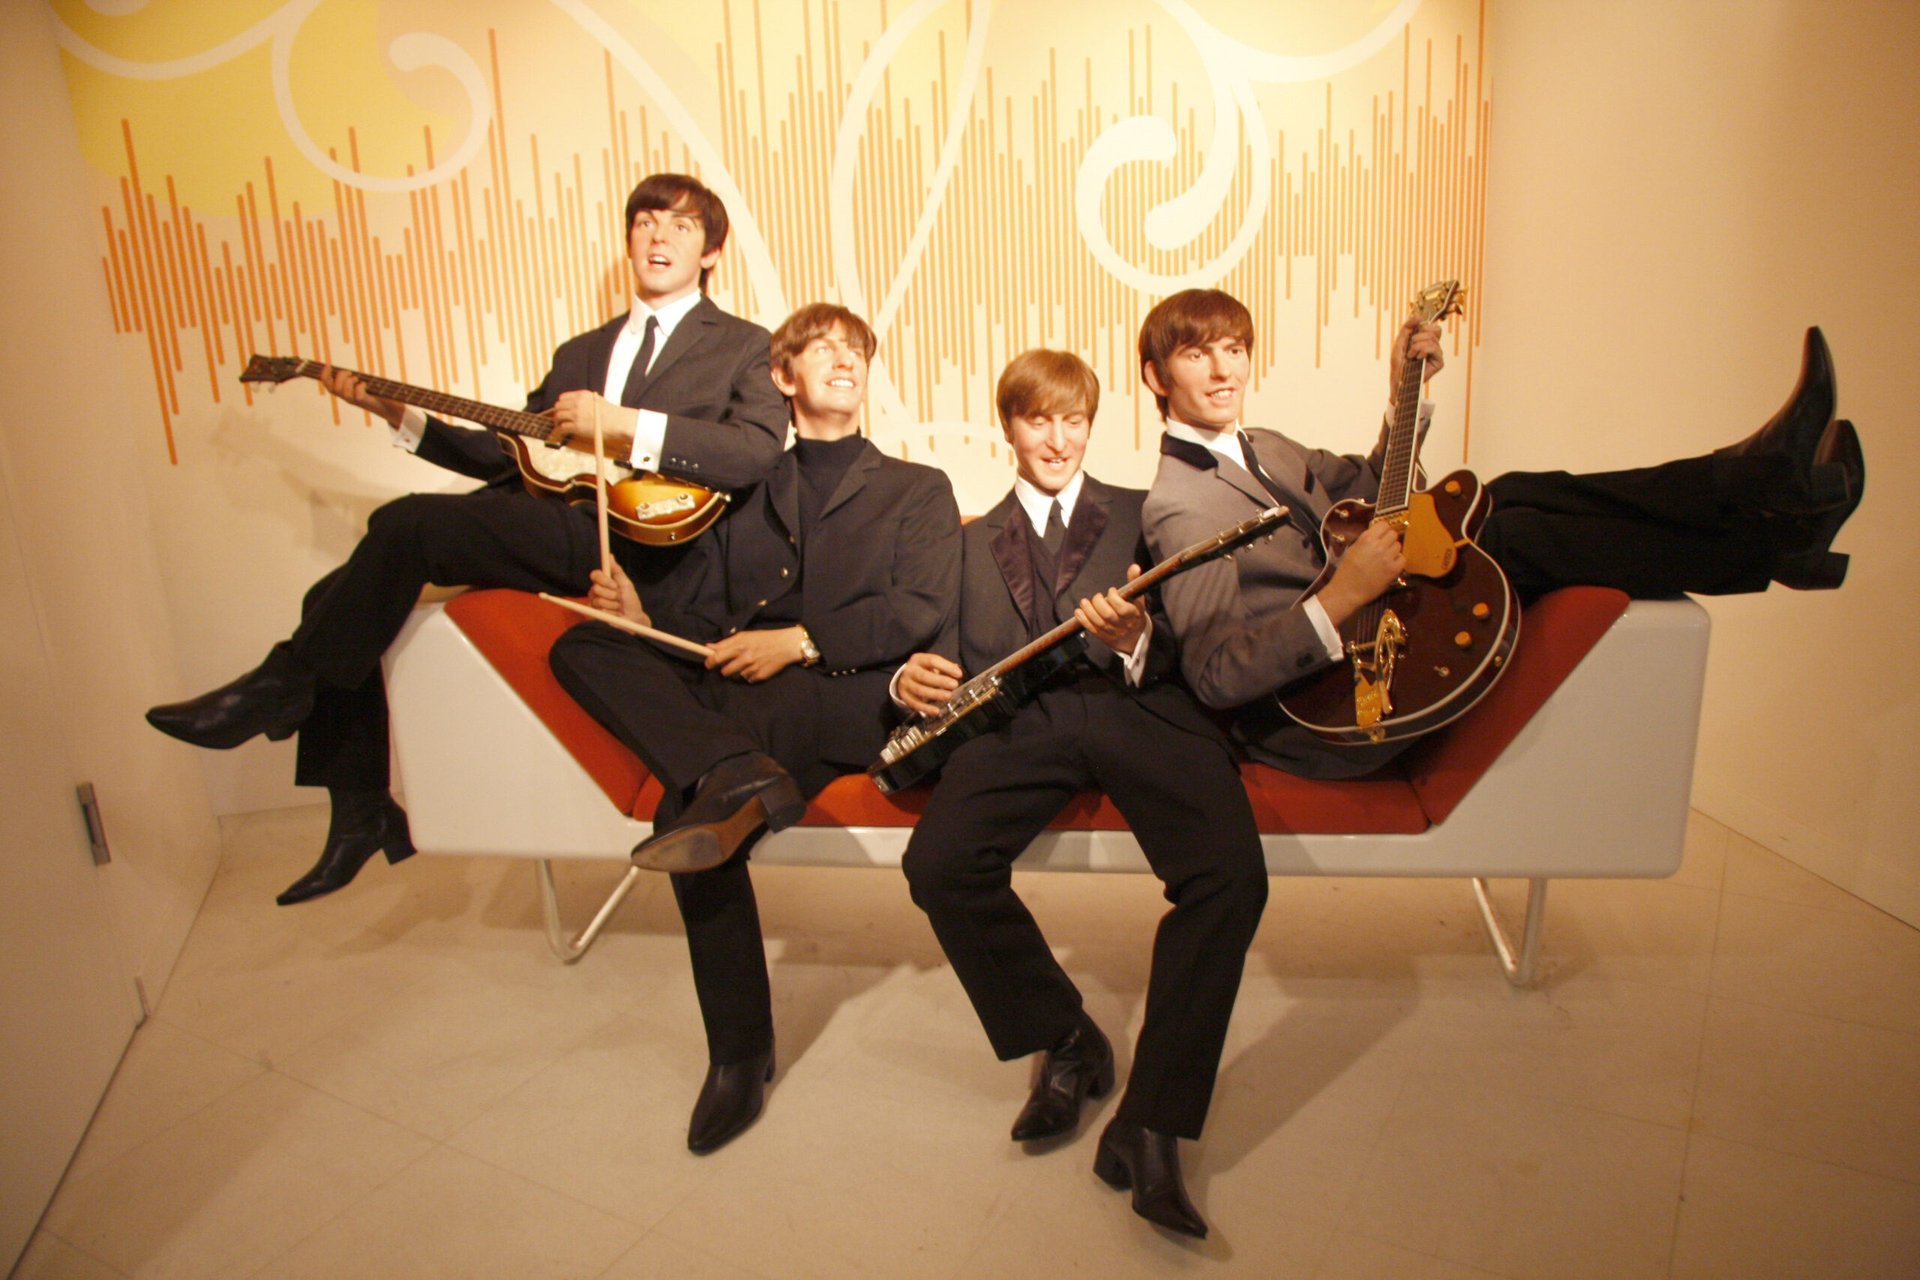 Wax figures of the Beatles